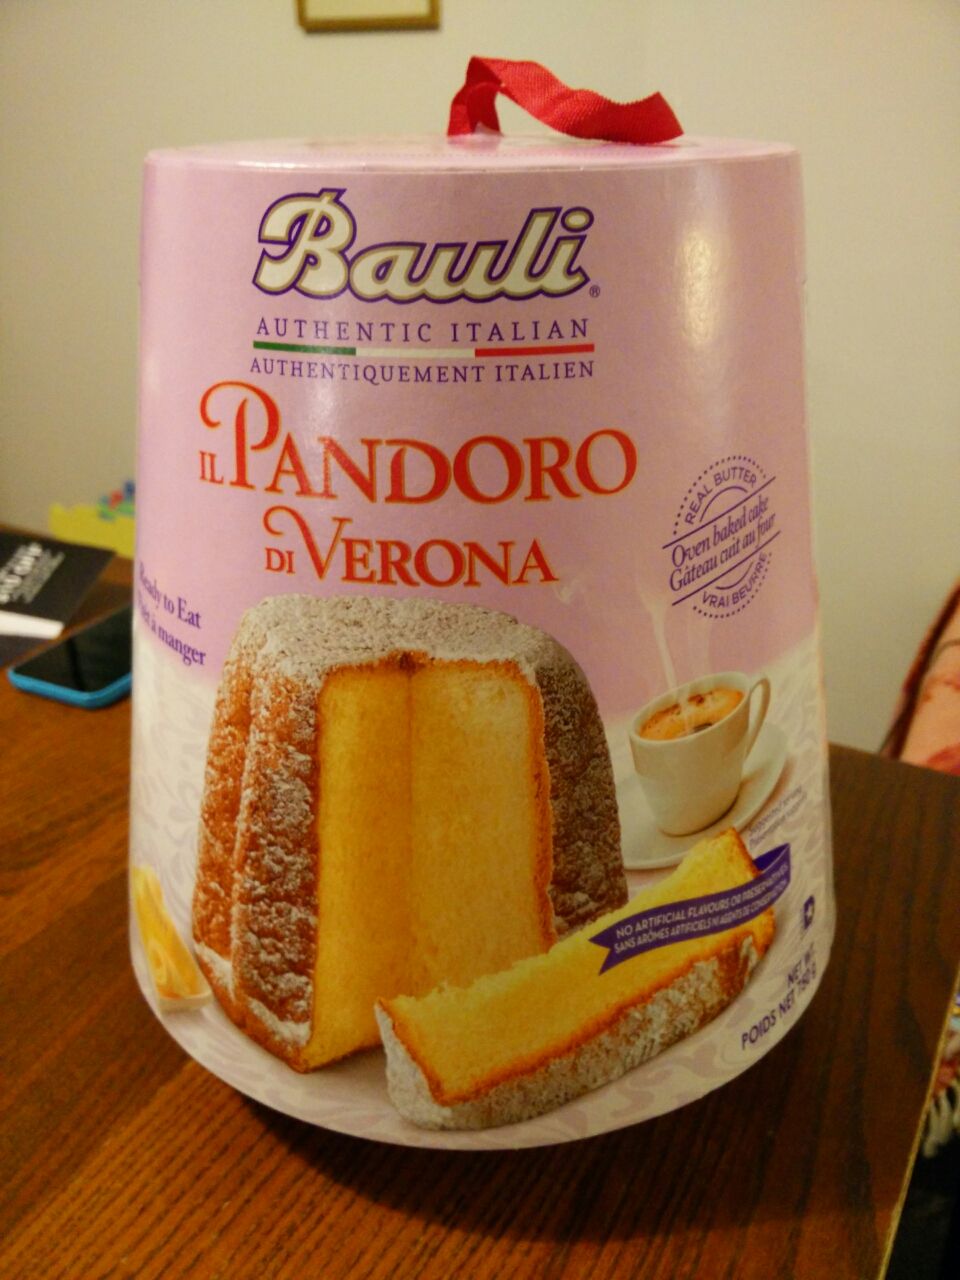 Pandoro イタリアのクリスマスには欠かせないお菓子 トロントの今 Borixii通信